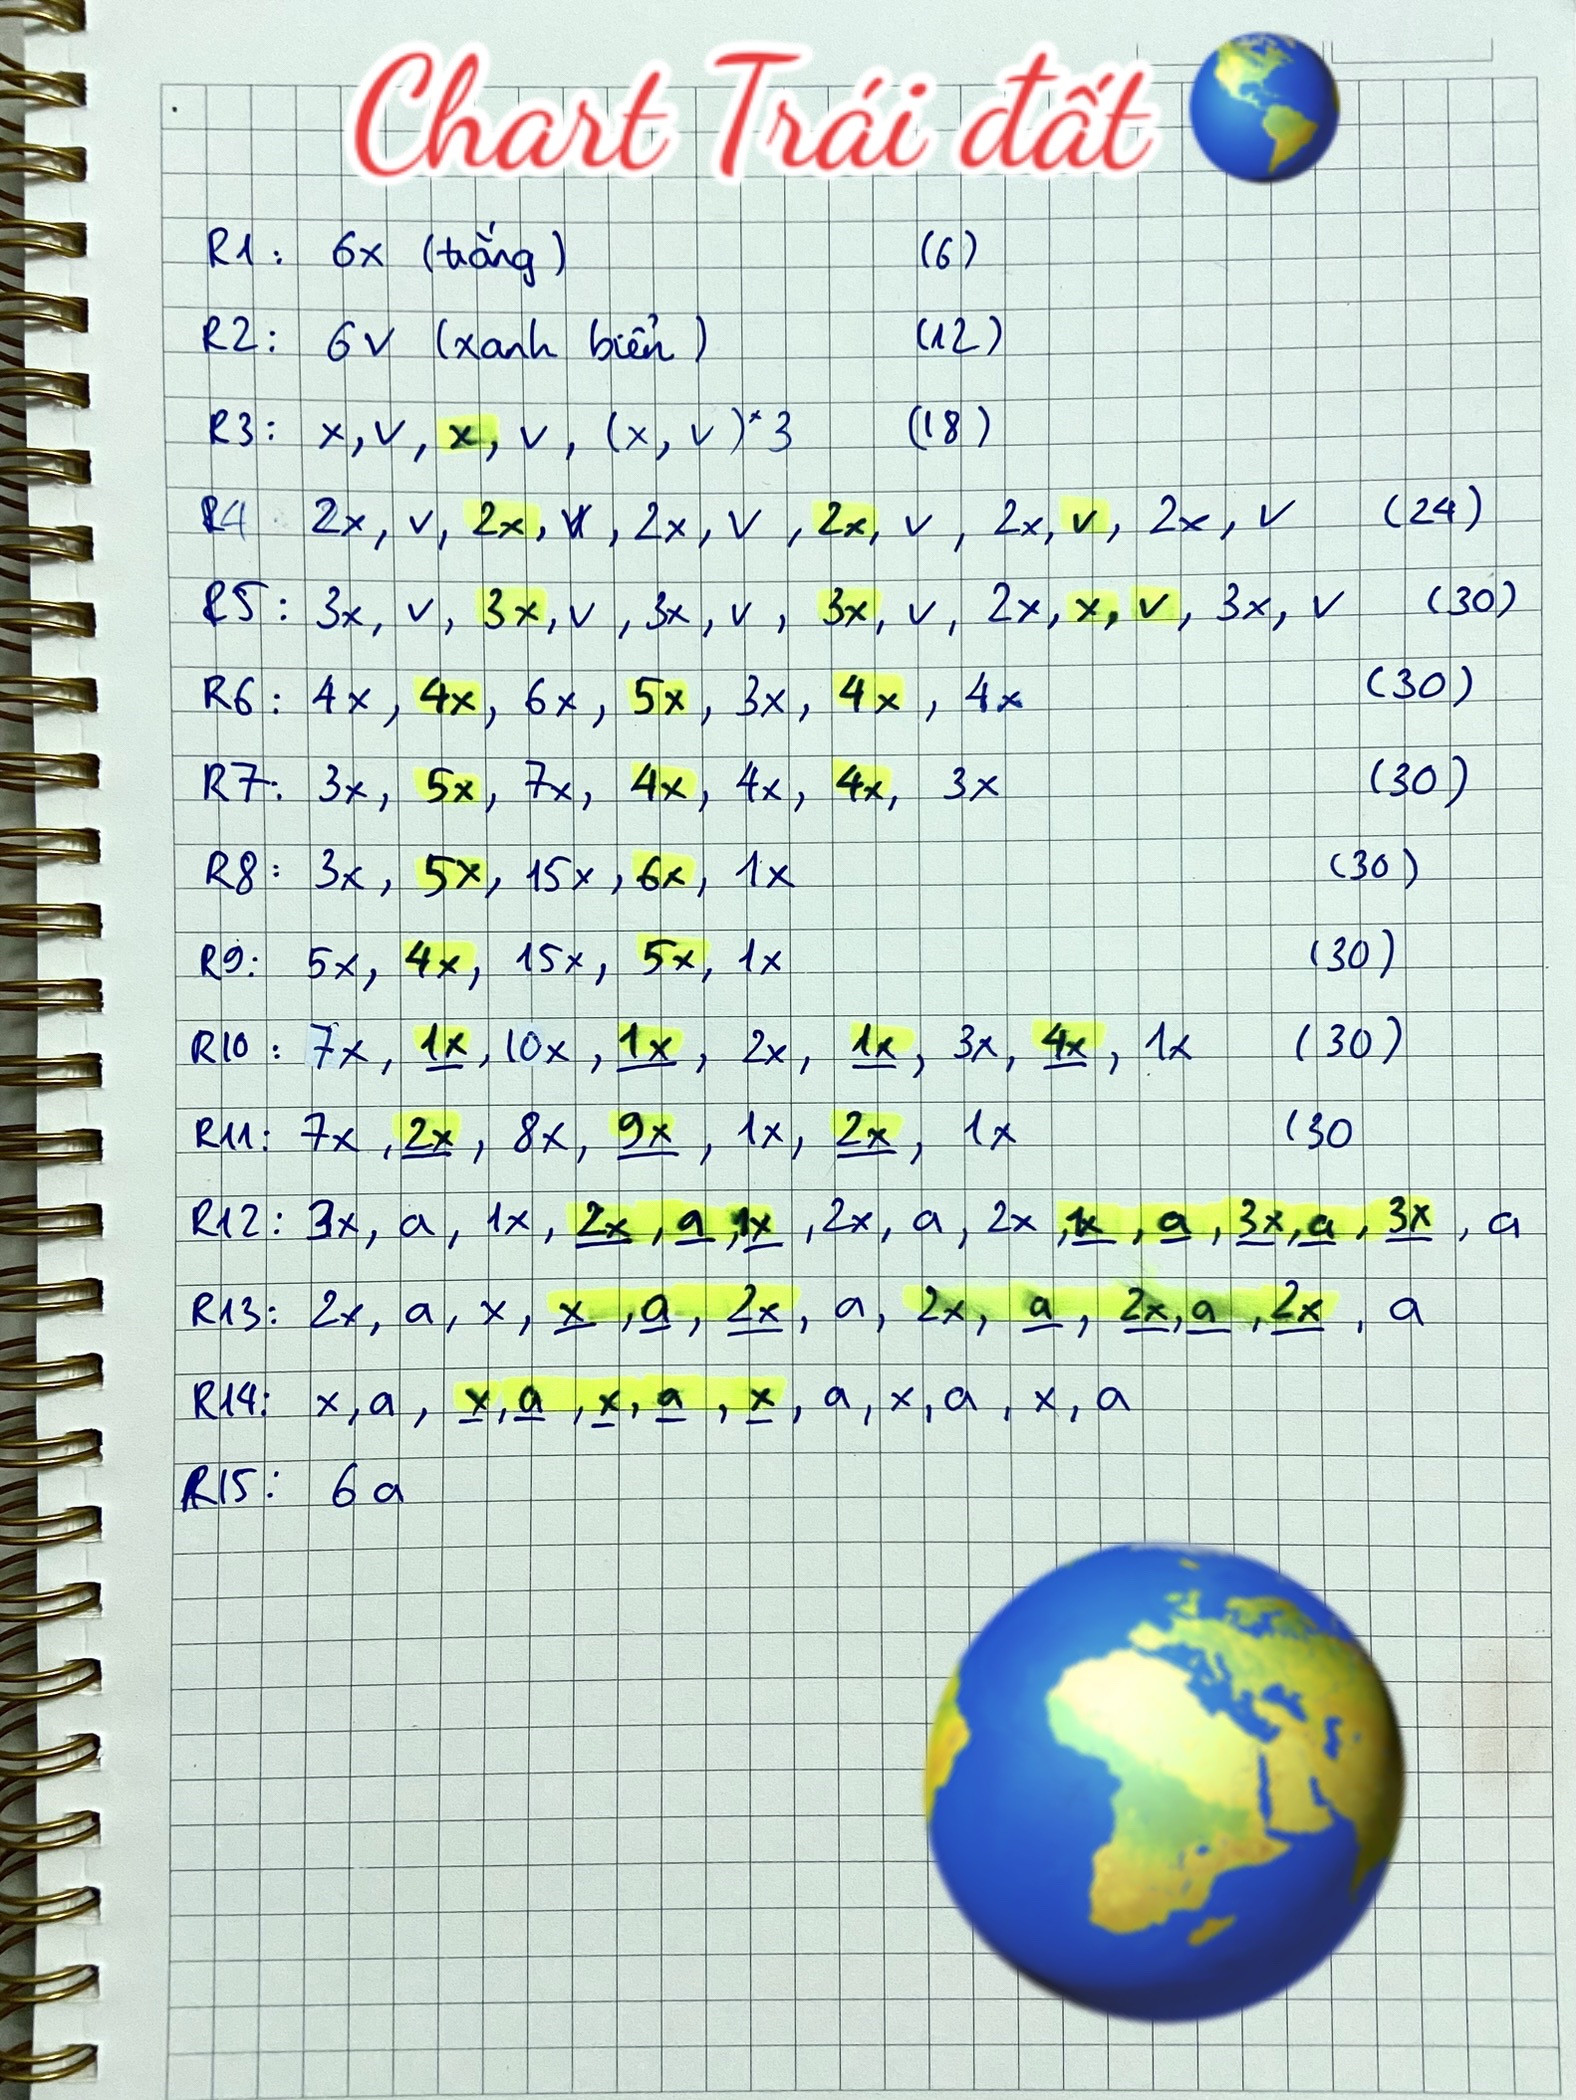 Chart trái đất, chart mặt trời